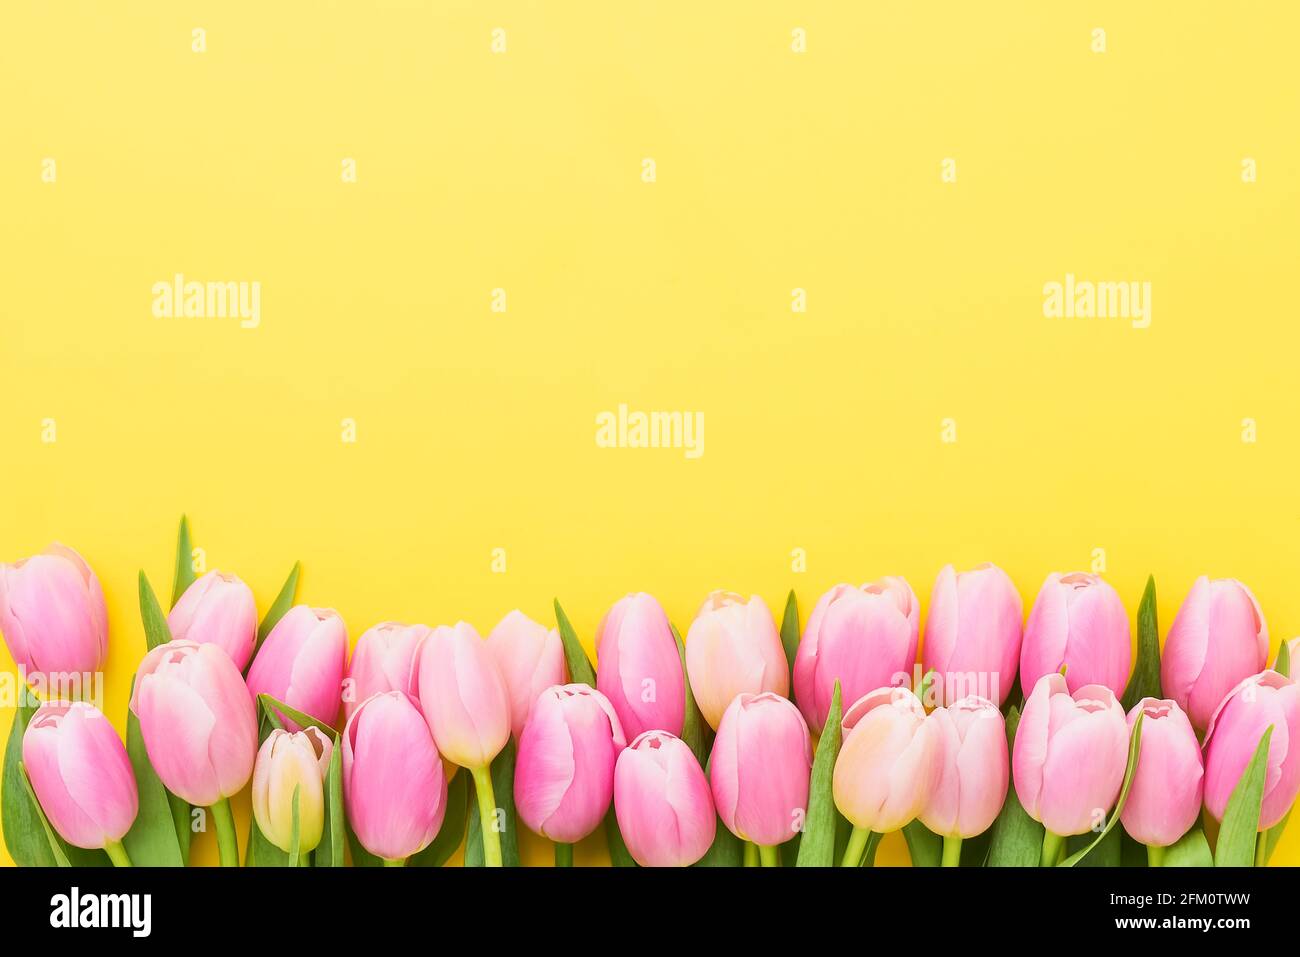 Biglietto d'auguri. Bordo di tulipani rosa su sfondo giallo. Festa della mamma, giorno di San Valentino, concetto di festa di compleanno. Disposizione piatta, spazio di copia Foto Stock